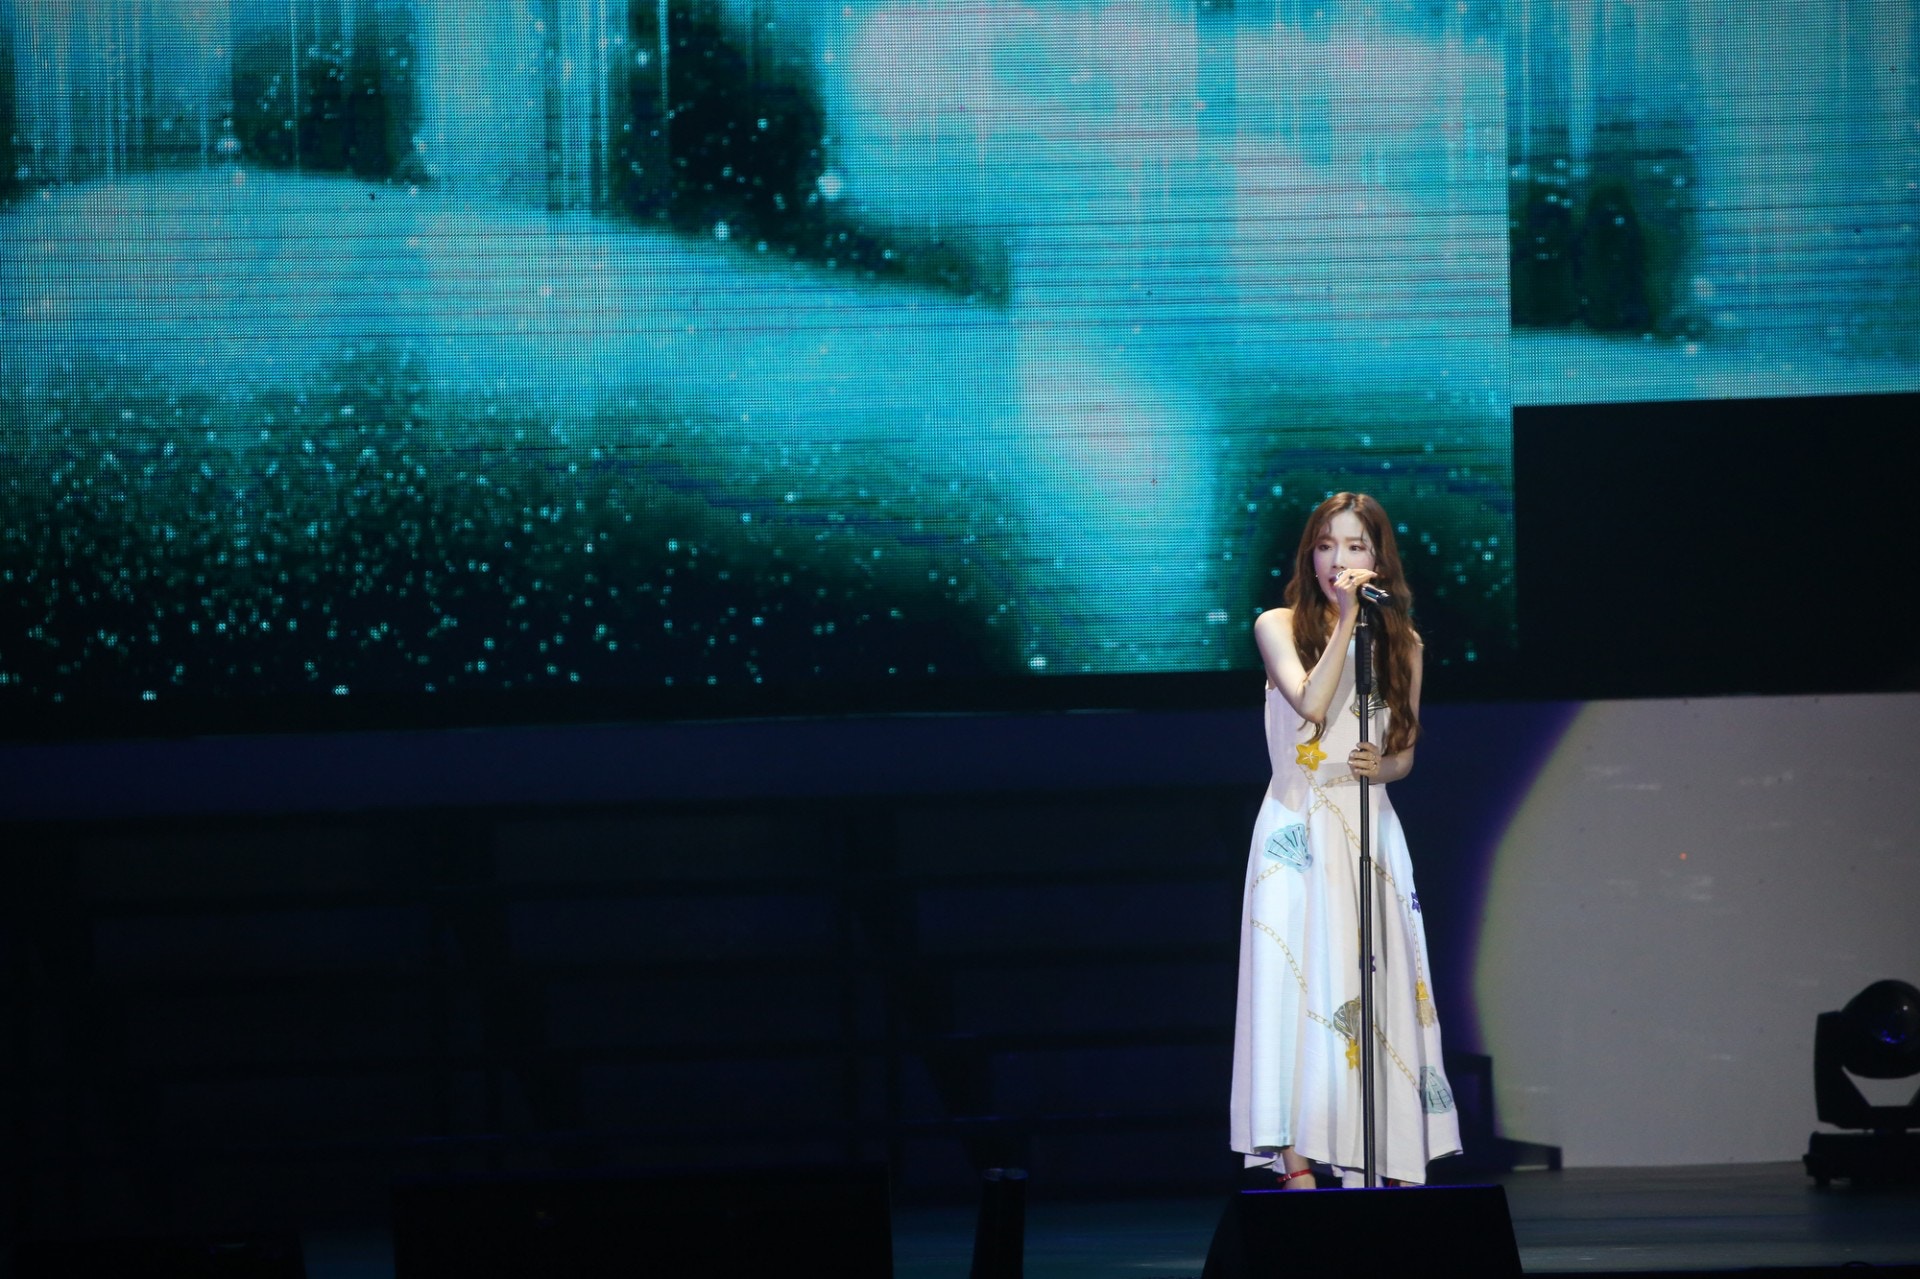 180520 Wonder K Concert in HongKong 태연 by 香港01 (30).jpg